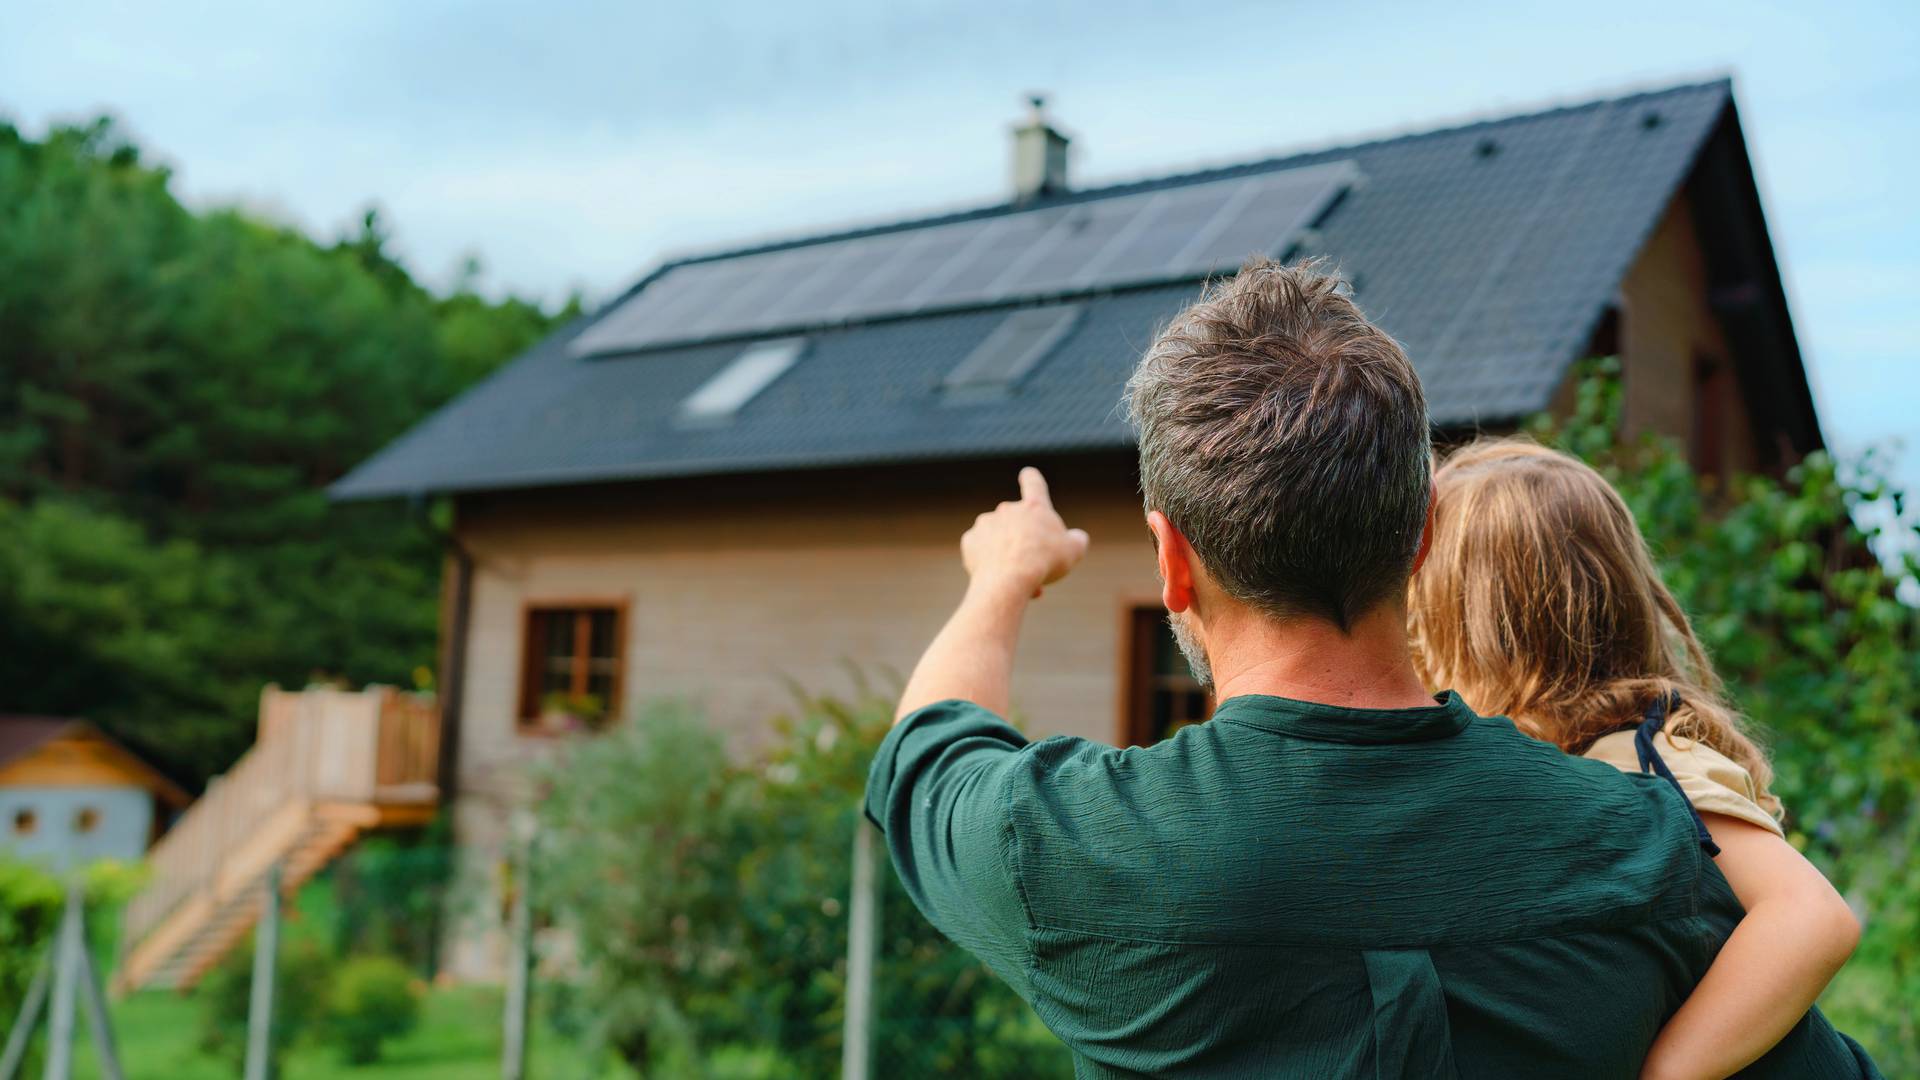 tata pokazujący córce dom z instalacją fotowoltaiczną o mocy 6 kW na dachu